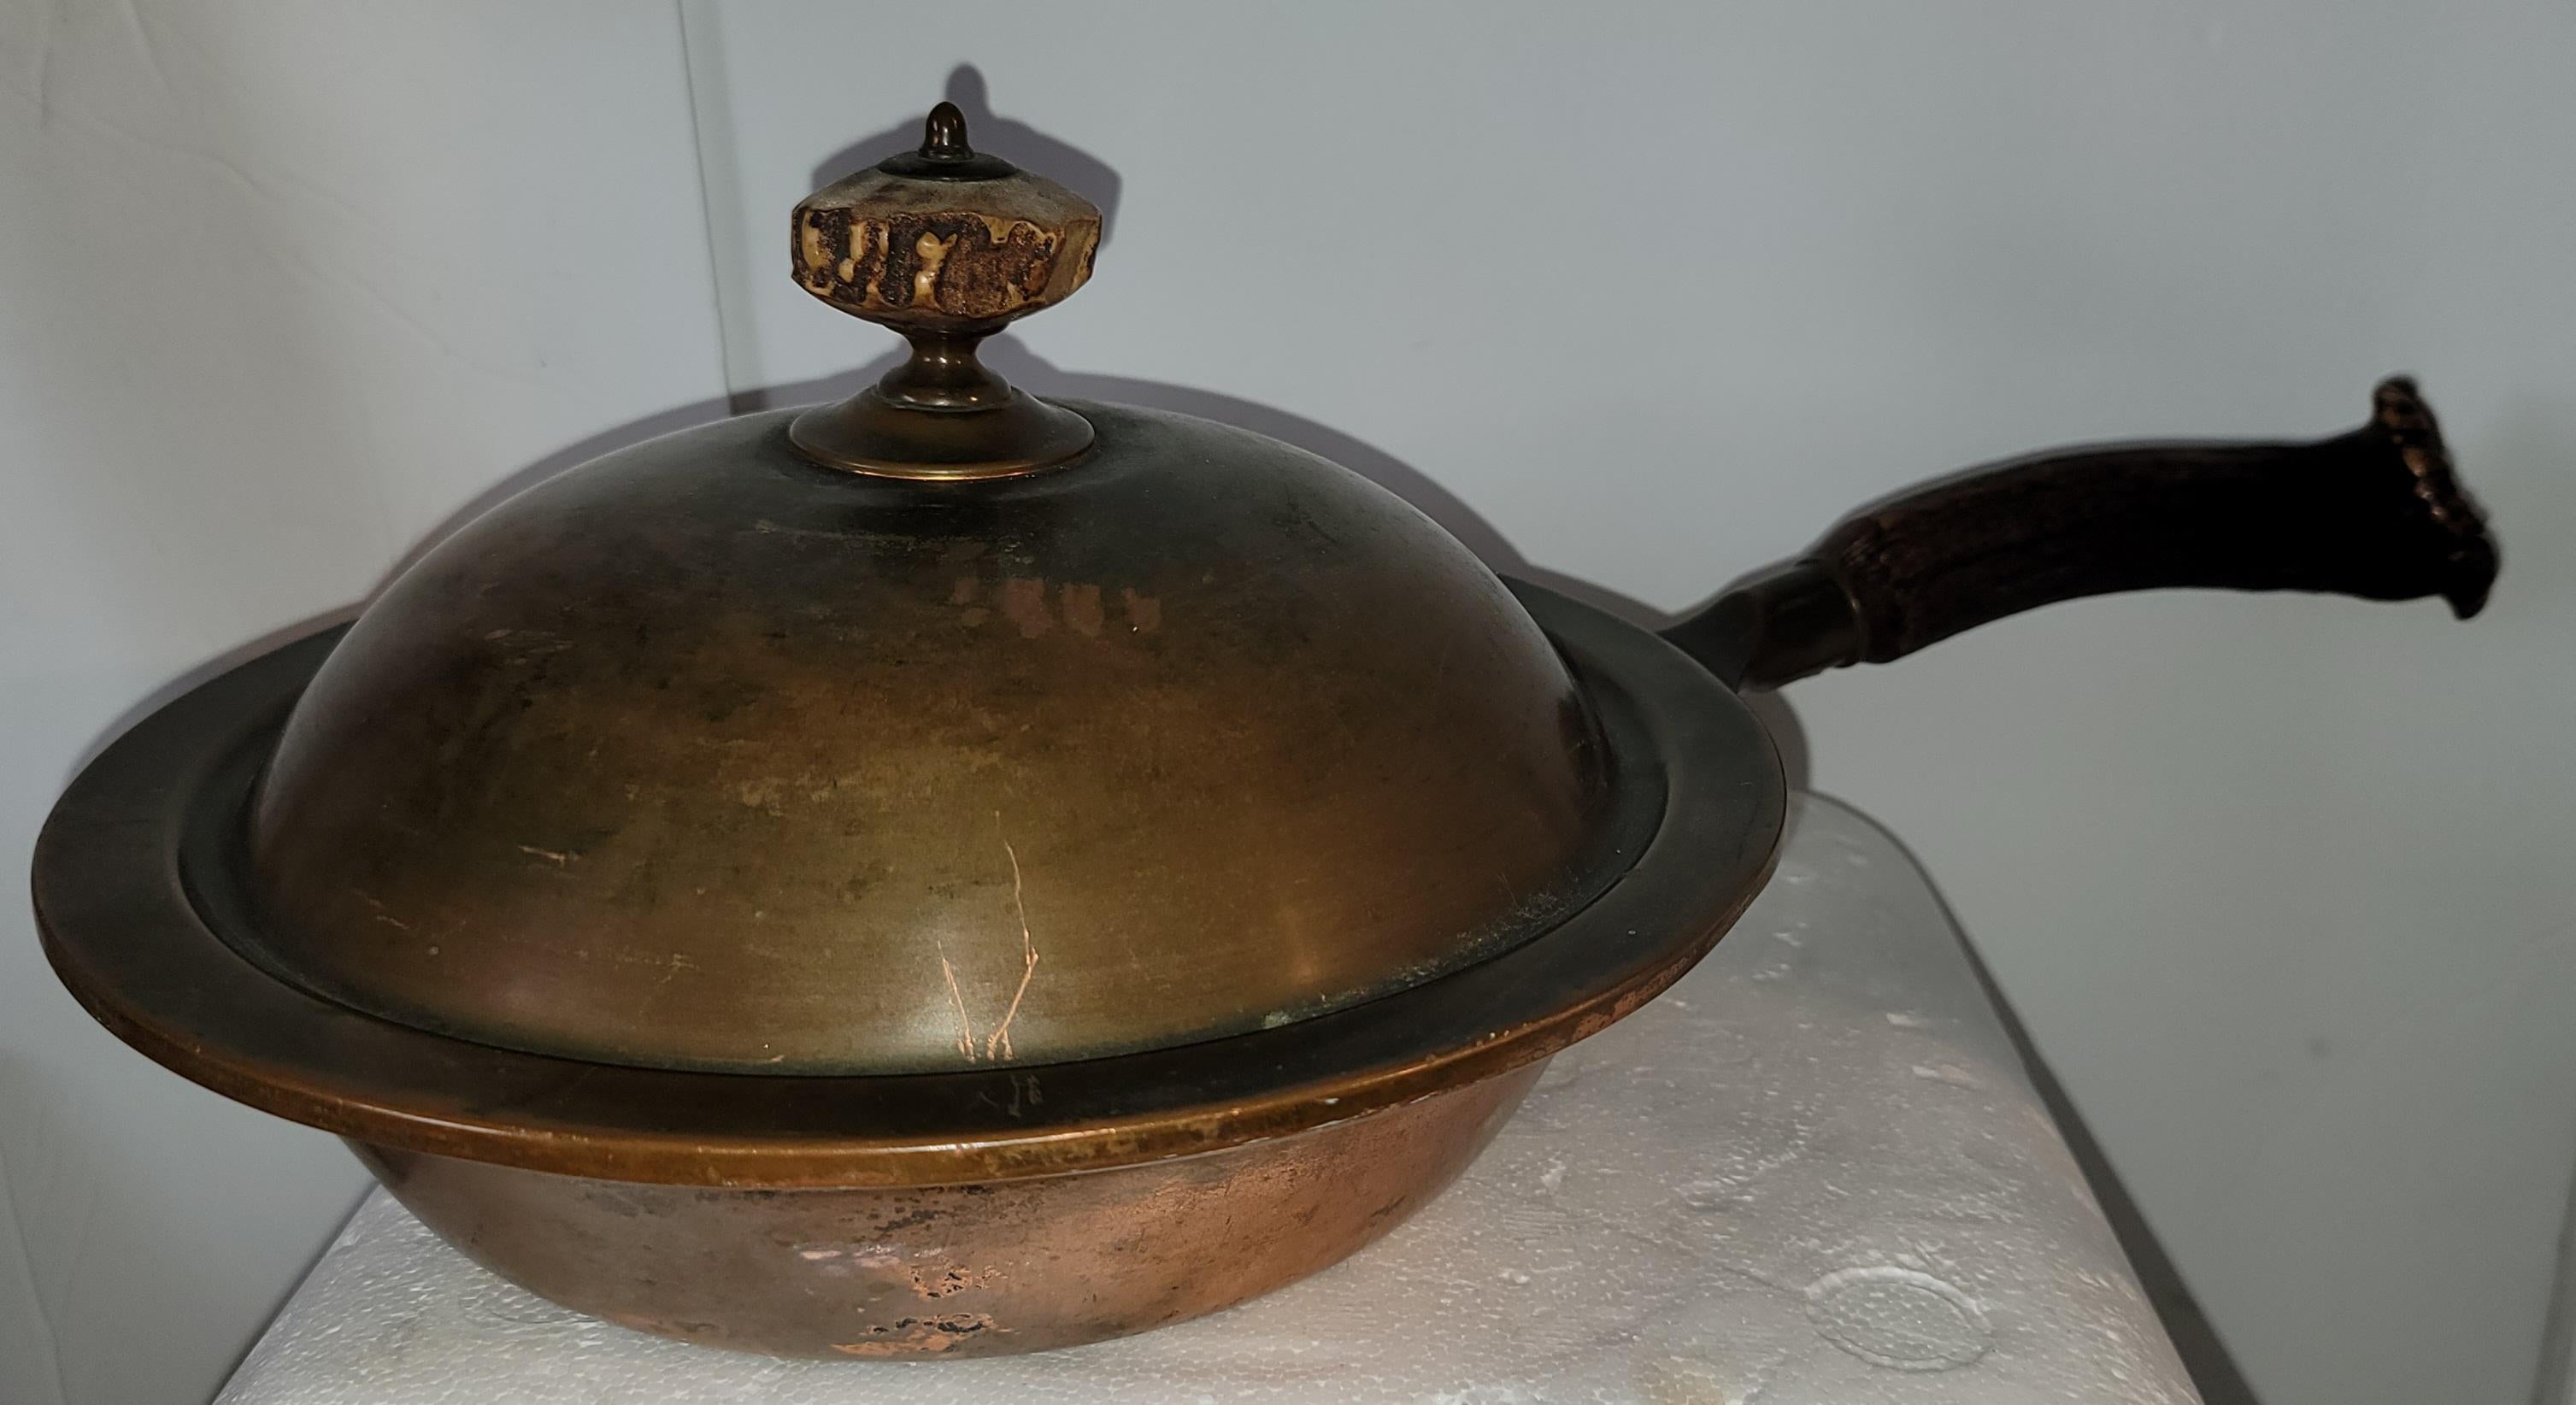 Antique copper frying pan with deer antler handles. Great film prop or decorative item.